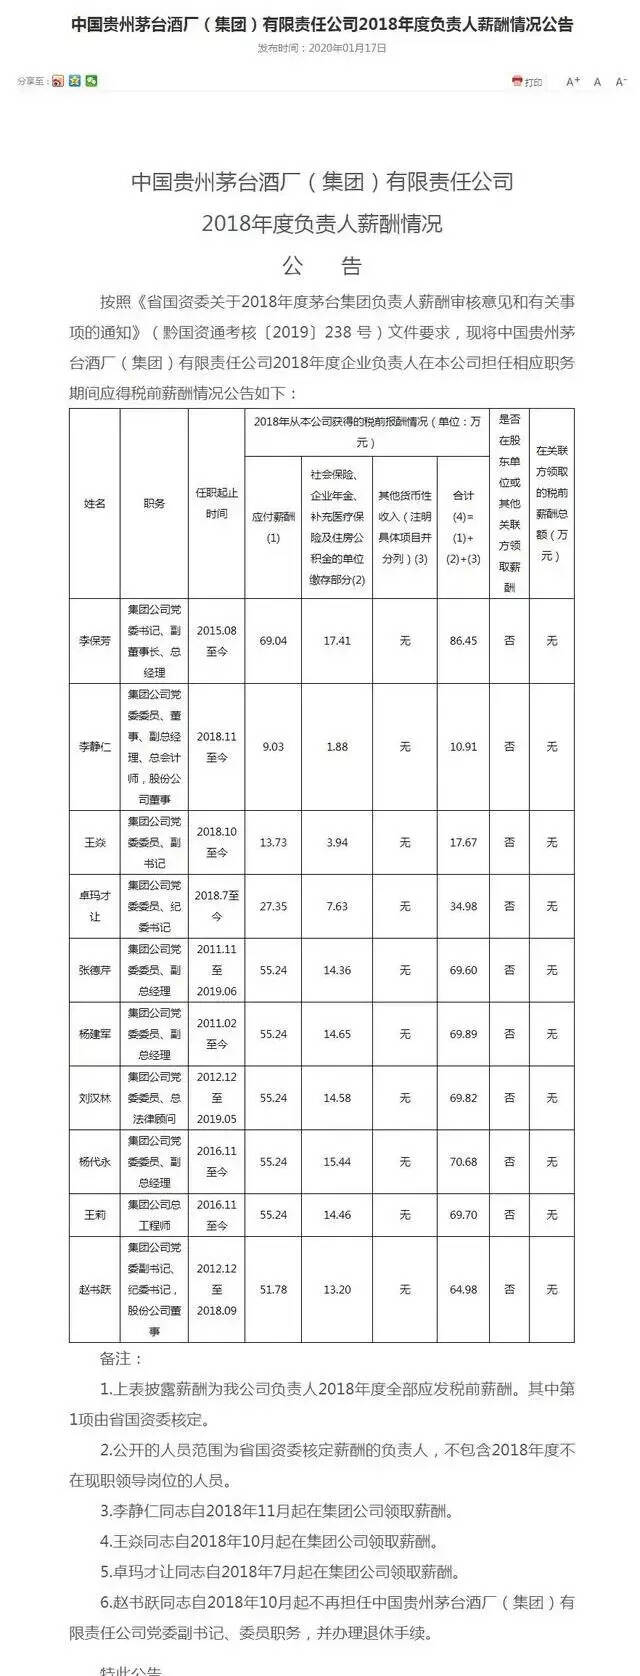 茅台集团公示高层年薪：董事长李保芳2018年税前年薪86.45万元